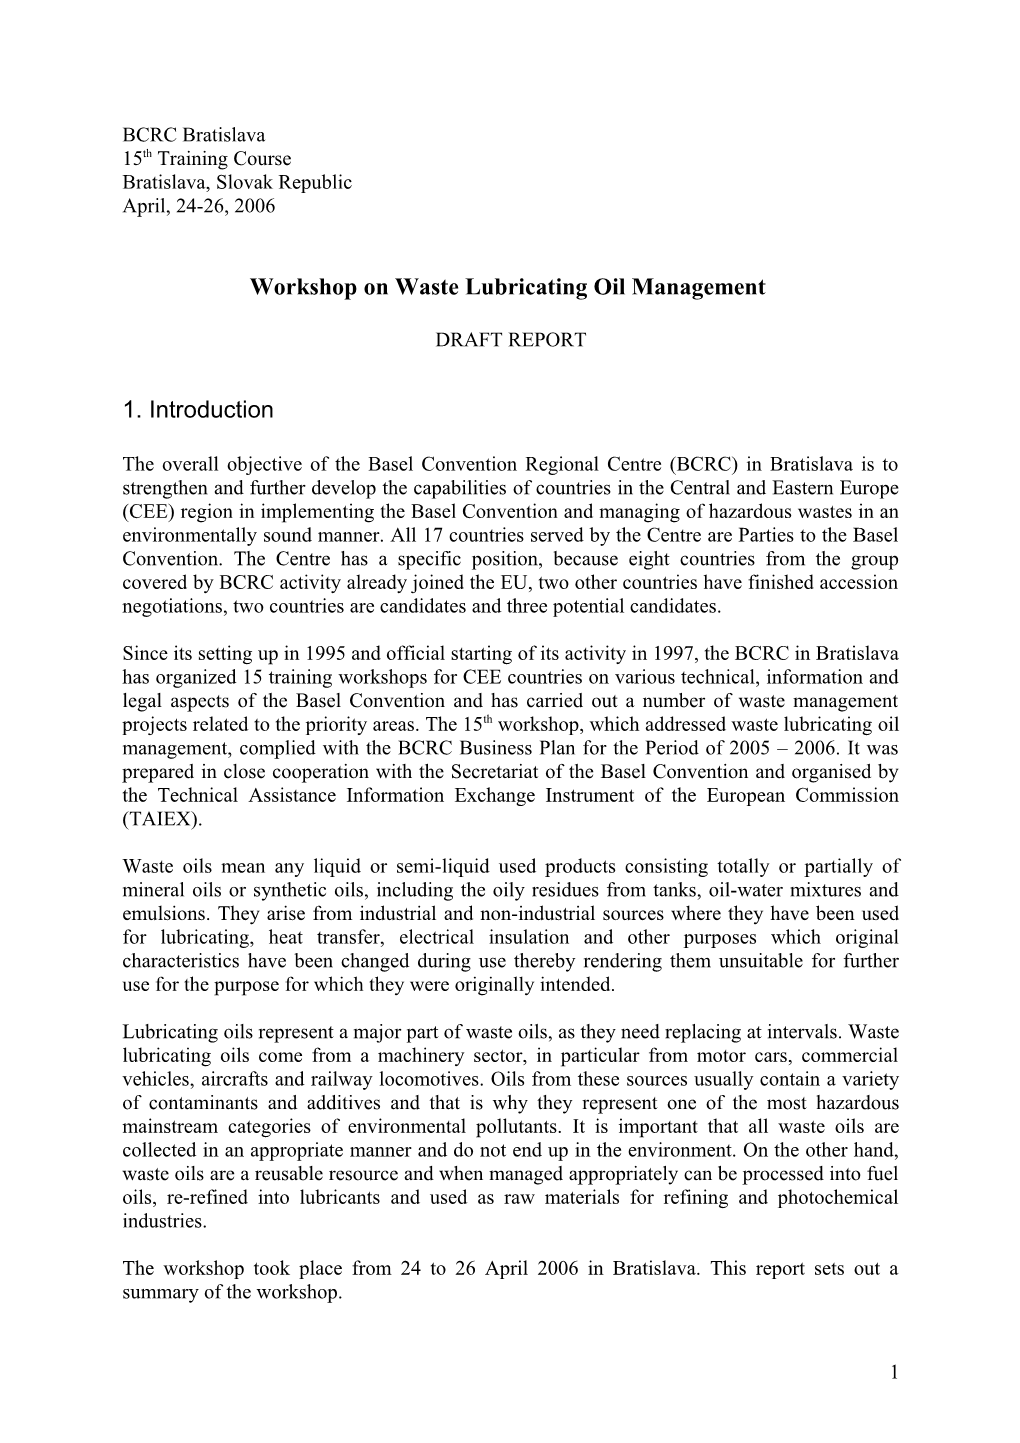 Workshop on Waste Lubricating Oil Management